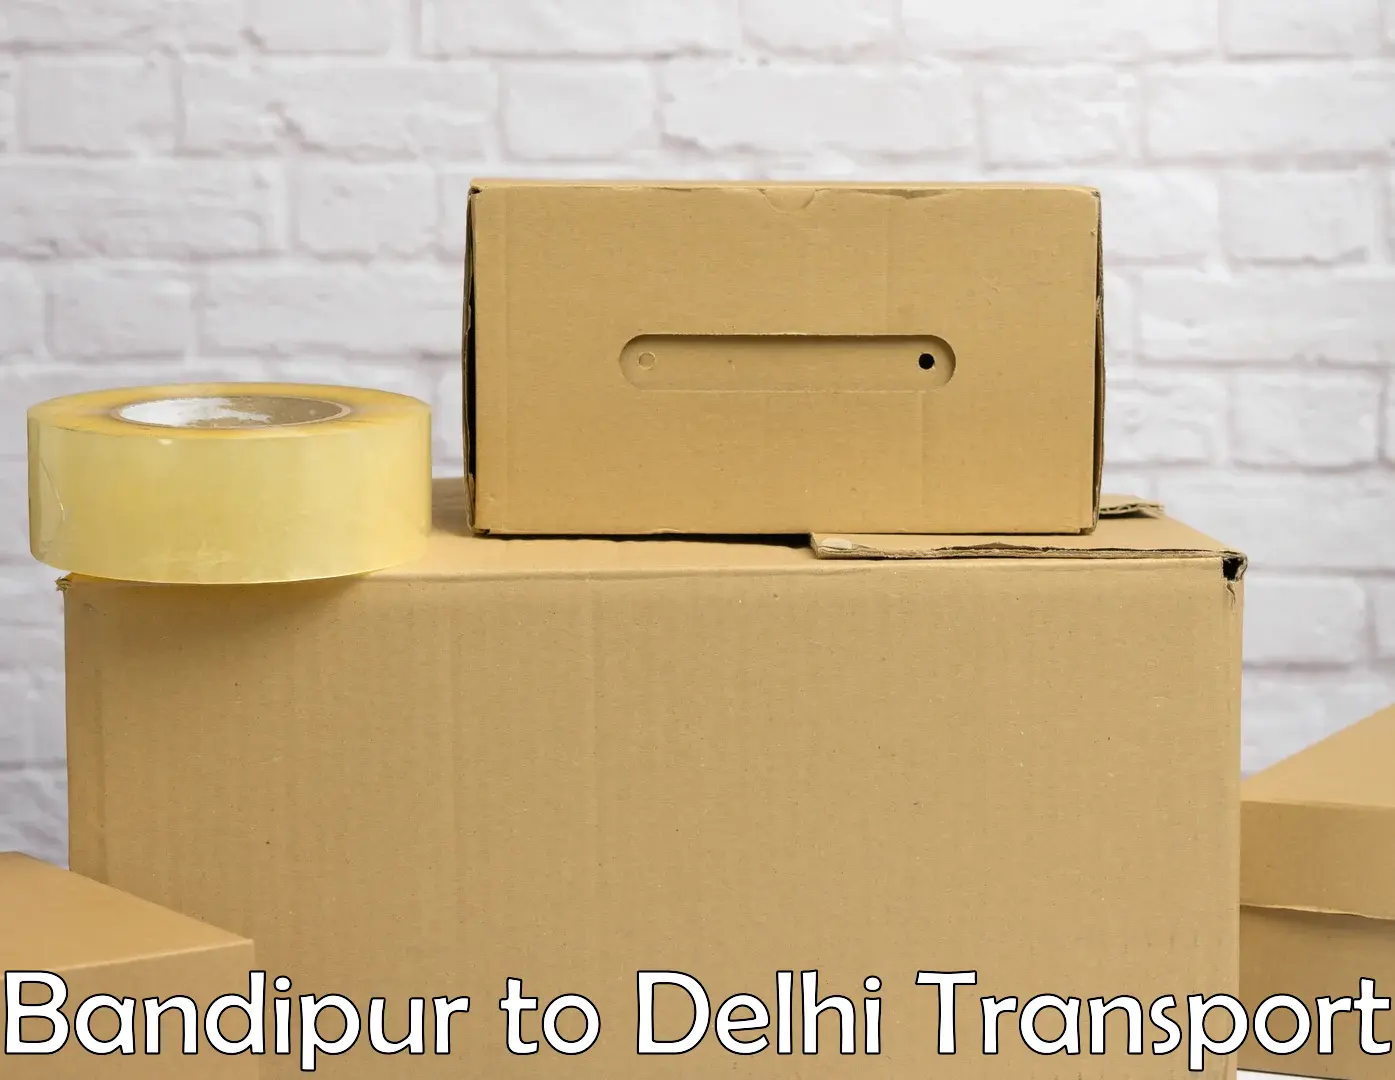 Two wheeler parcel service Bandipur to Burari